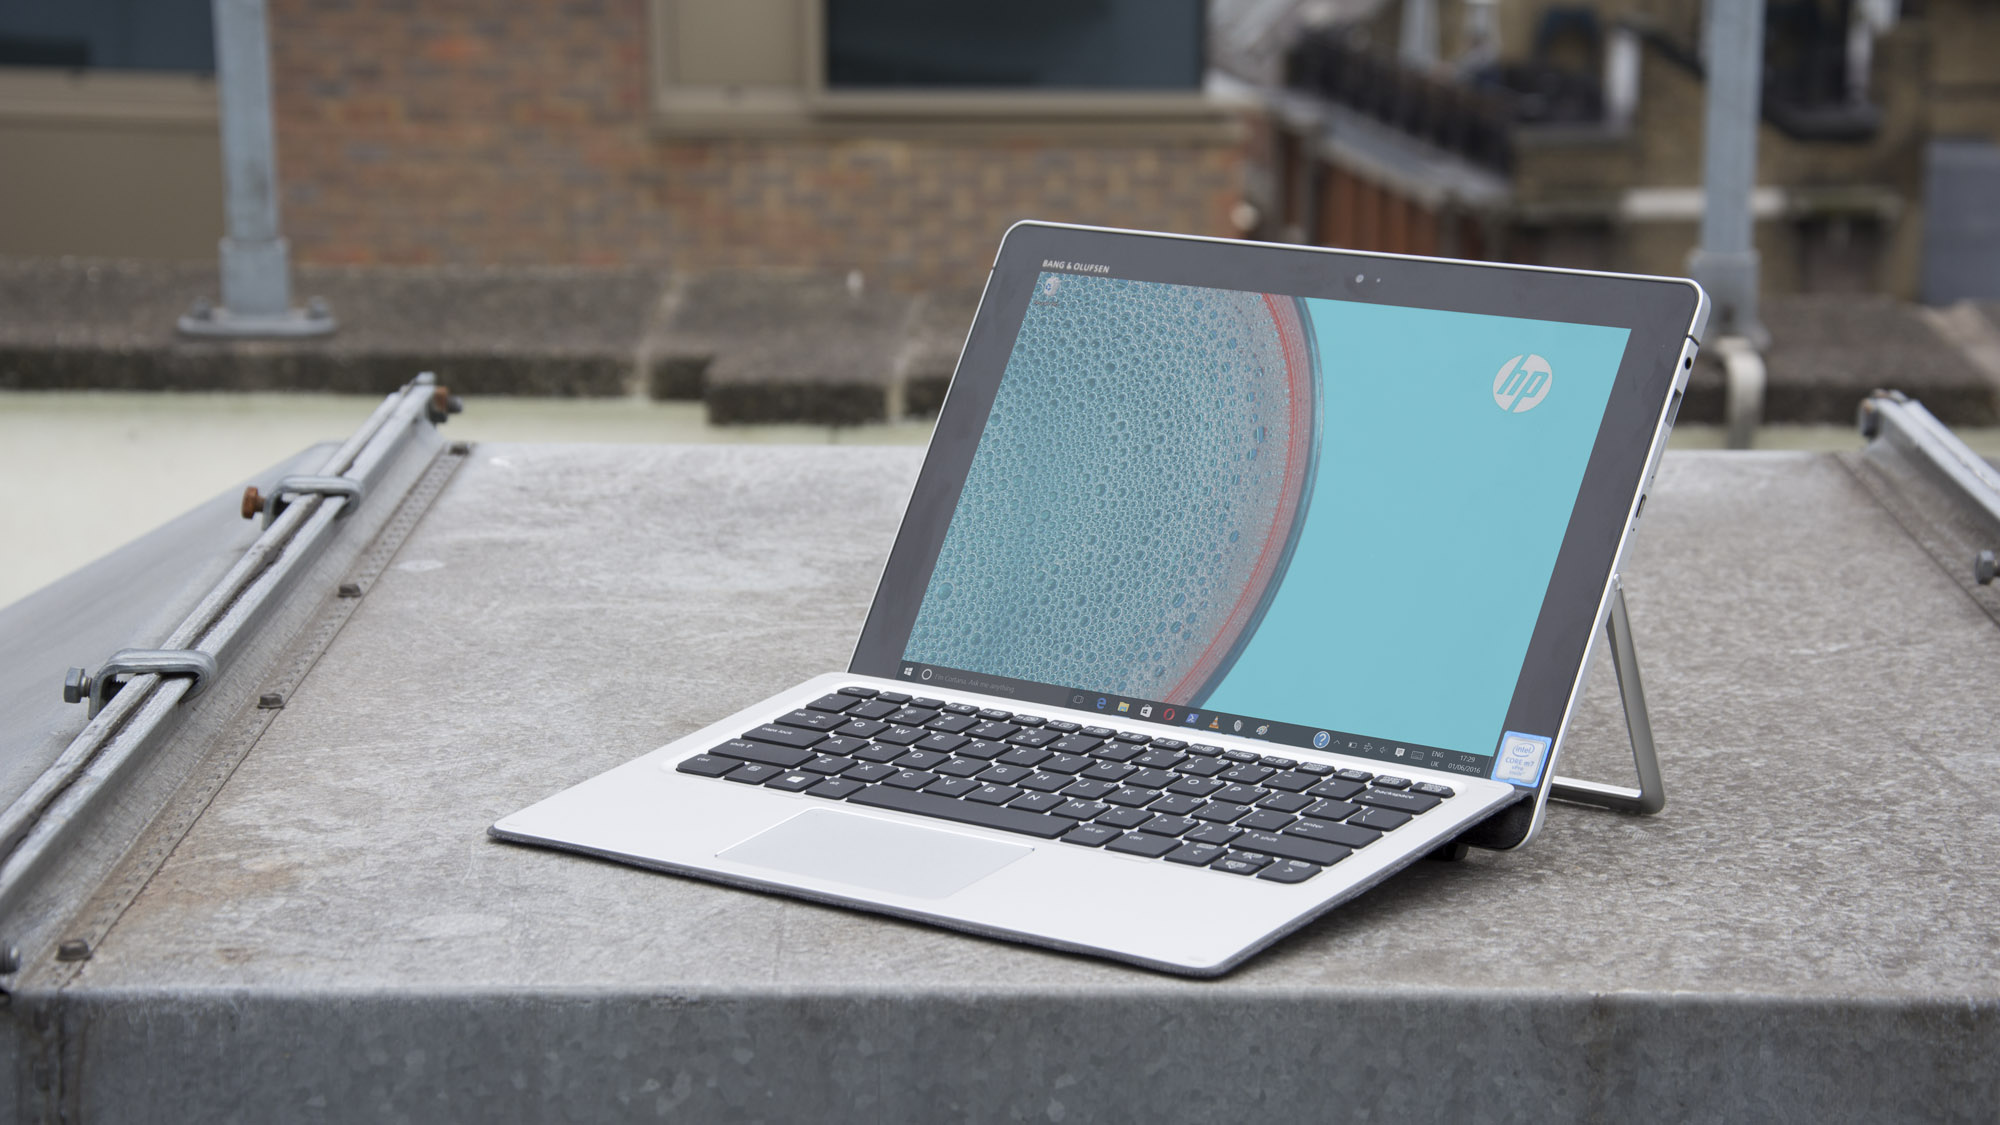 HP Elite x2 anmeldelse: Slår Surface Pro 4 på nogle måder (men ikke på andre)